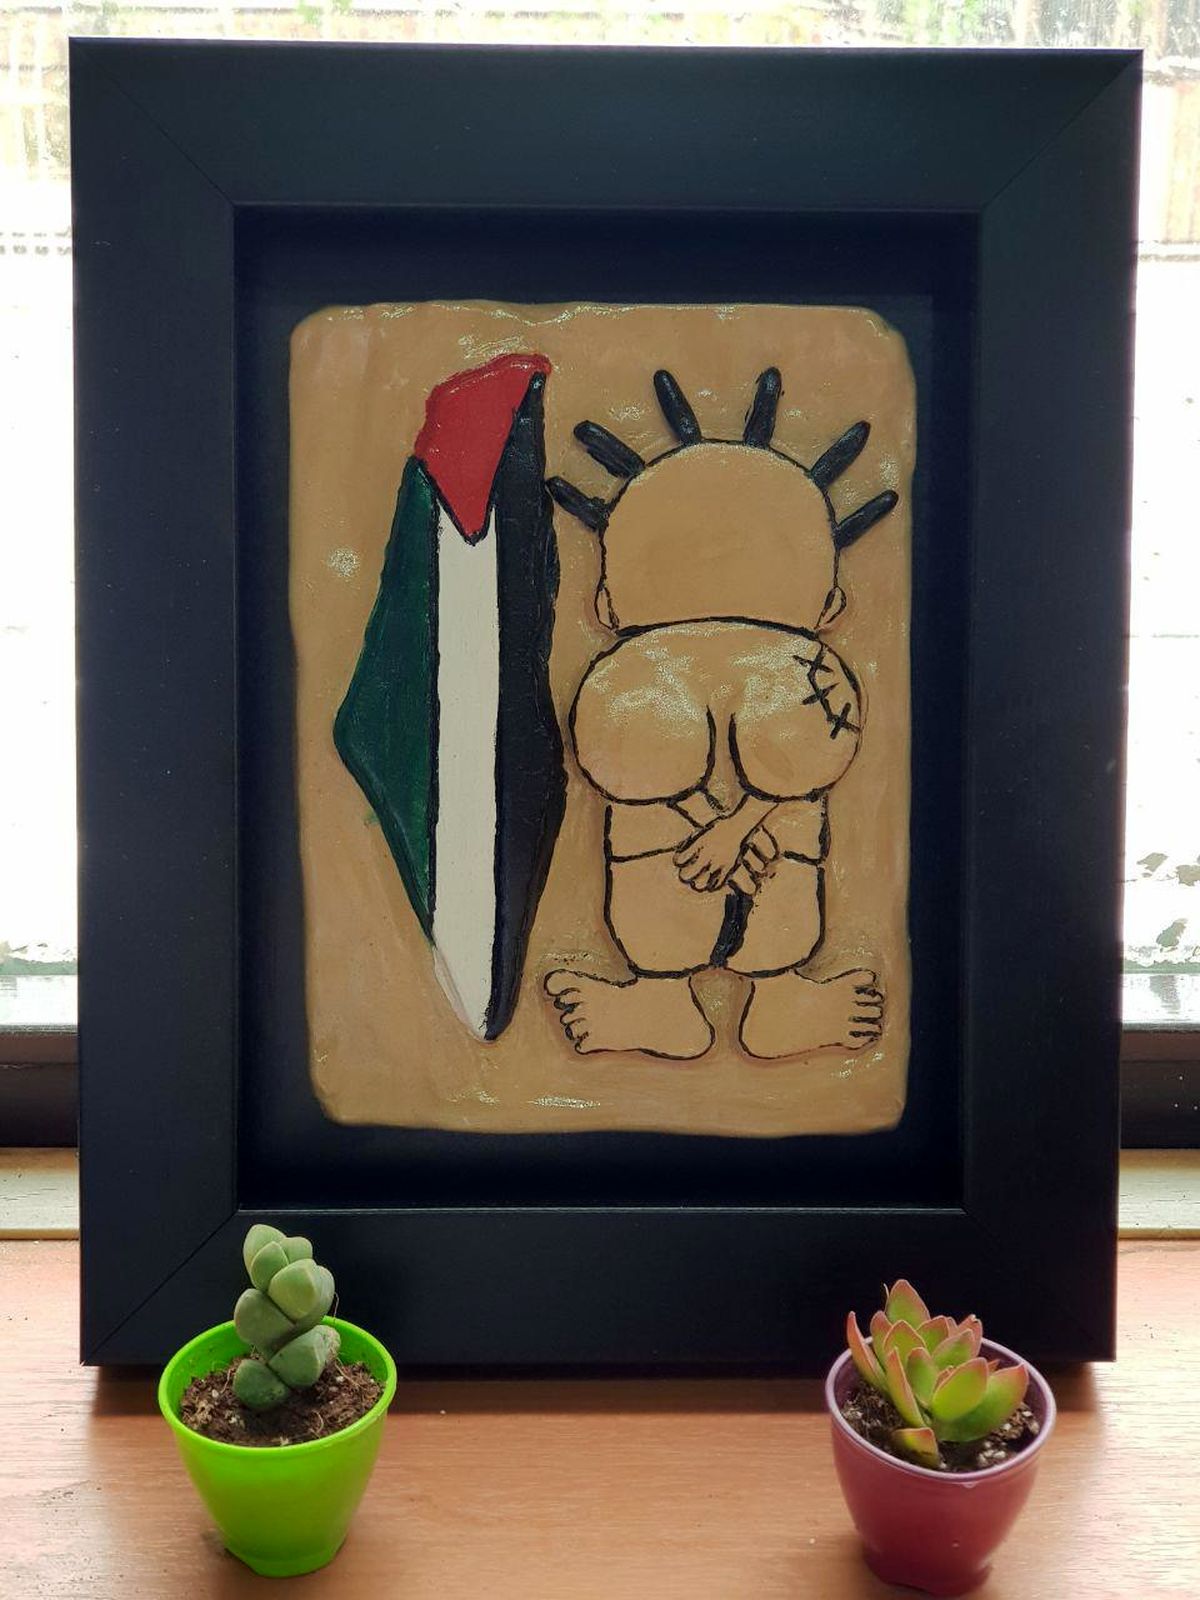 ۲۲ جولای؛ سالگرد ترور ناجی العلی کاریکاتوریست فلسطینی